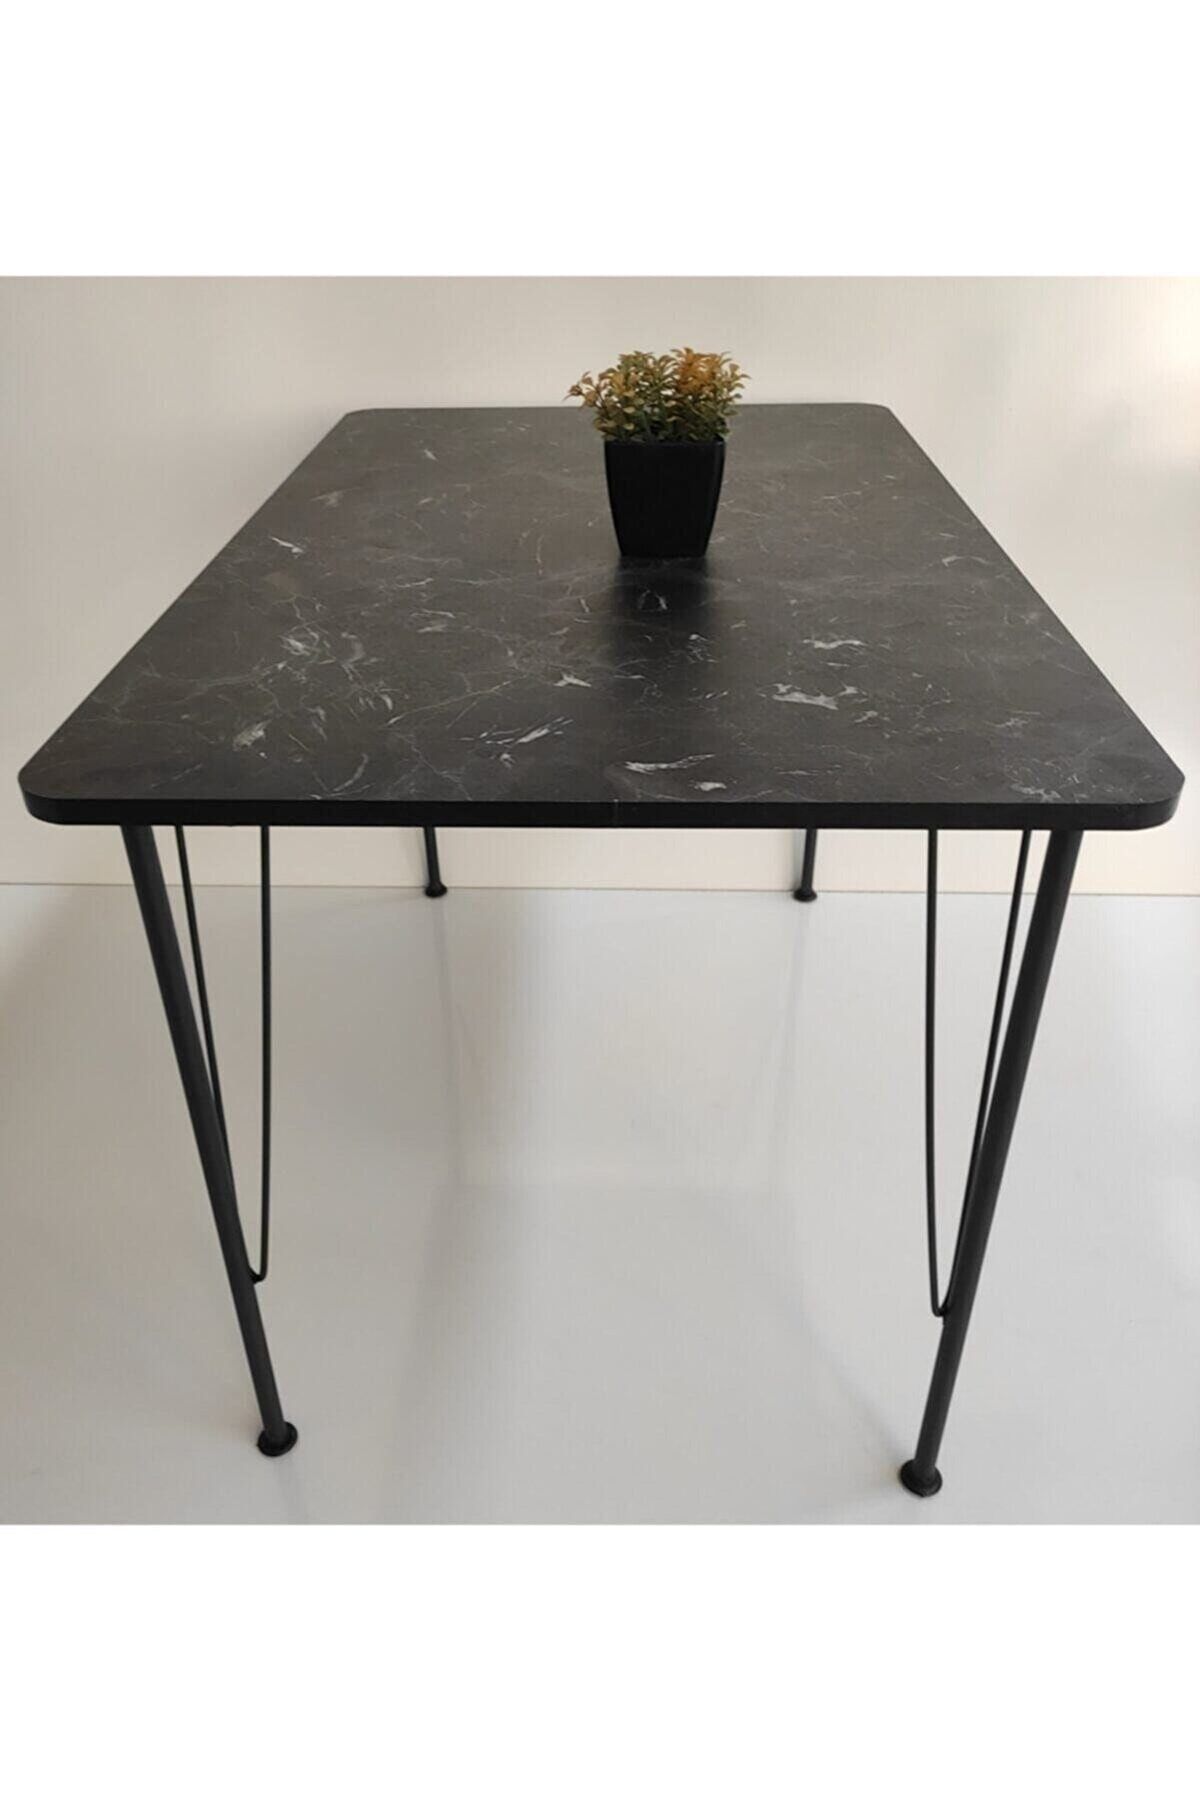 MSK mobilya dekorasyon Siyah Mermer Desen Oval Mutfak Masası 120*60